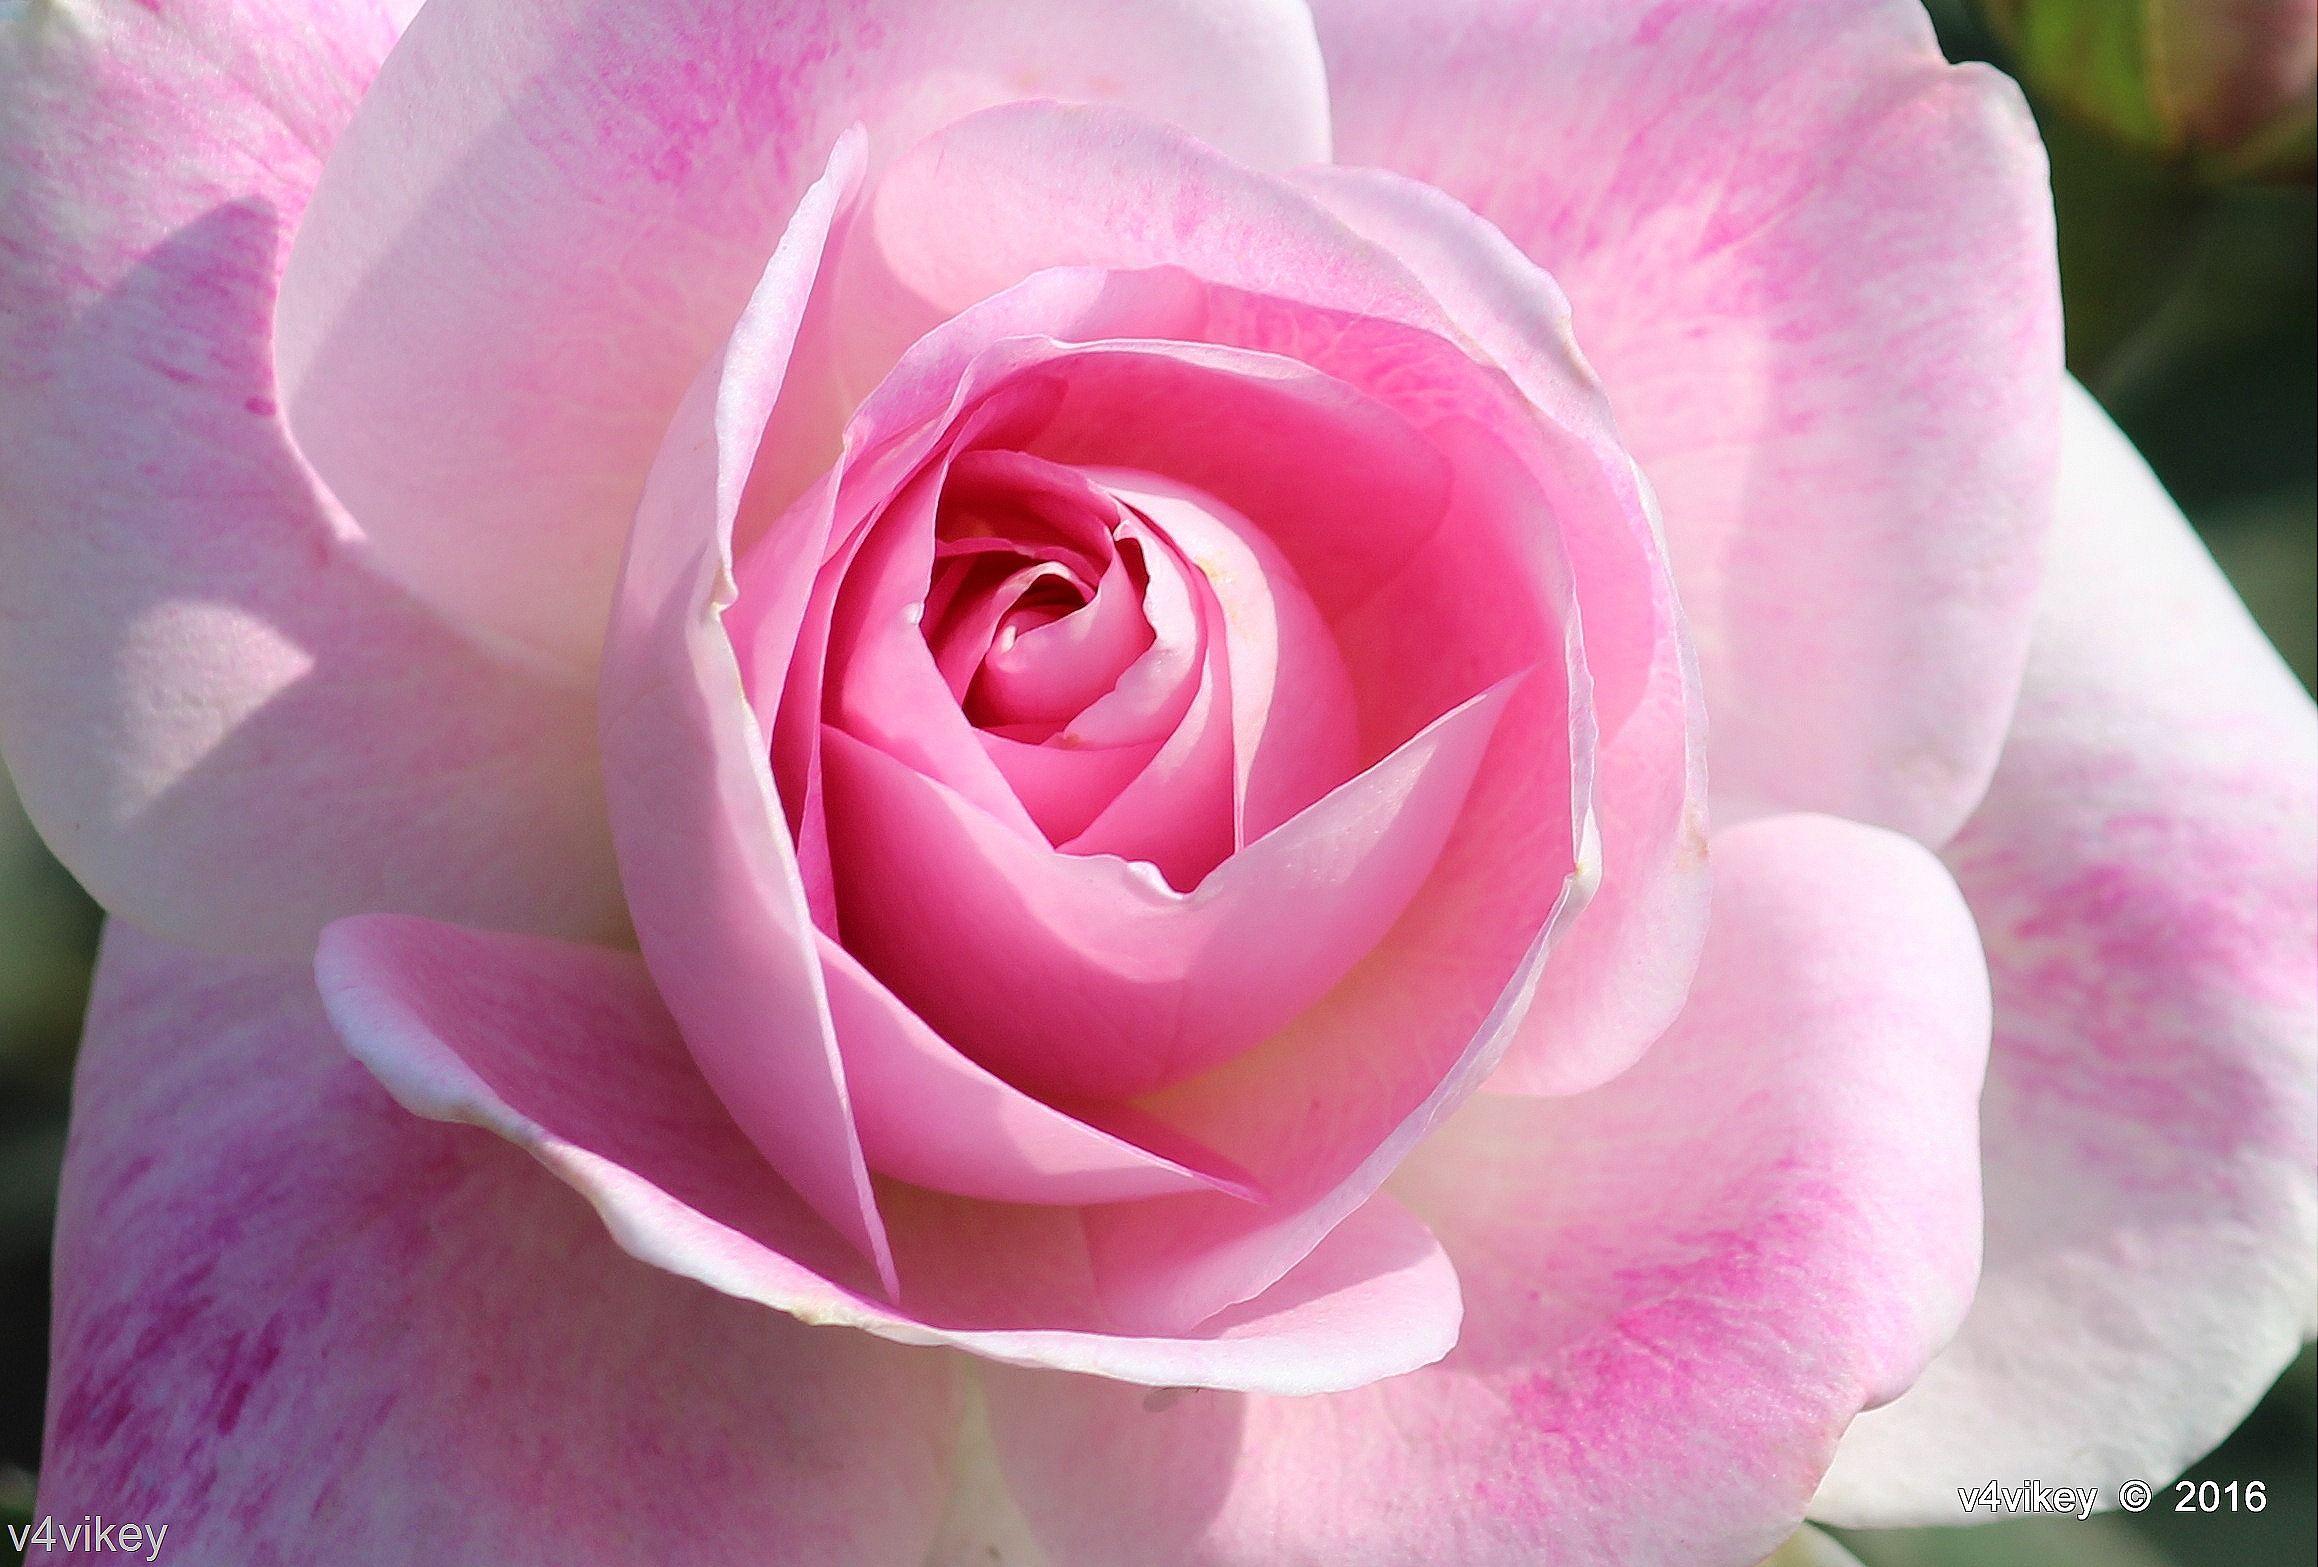 Types of Rose Flower